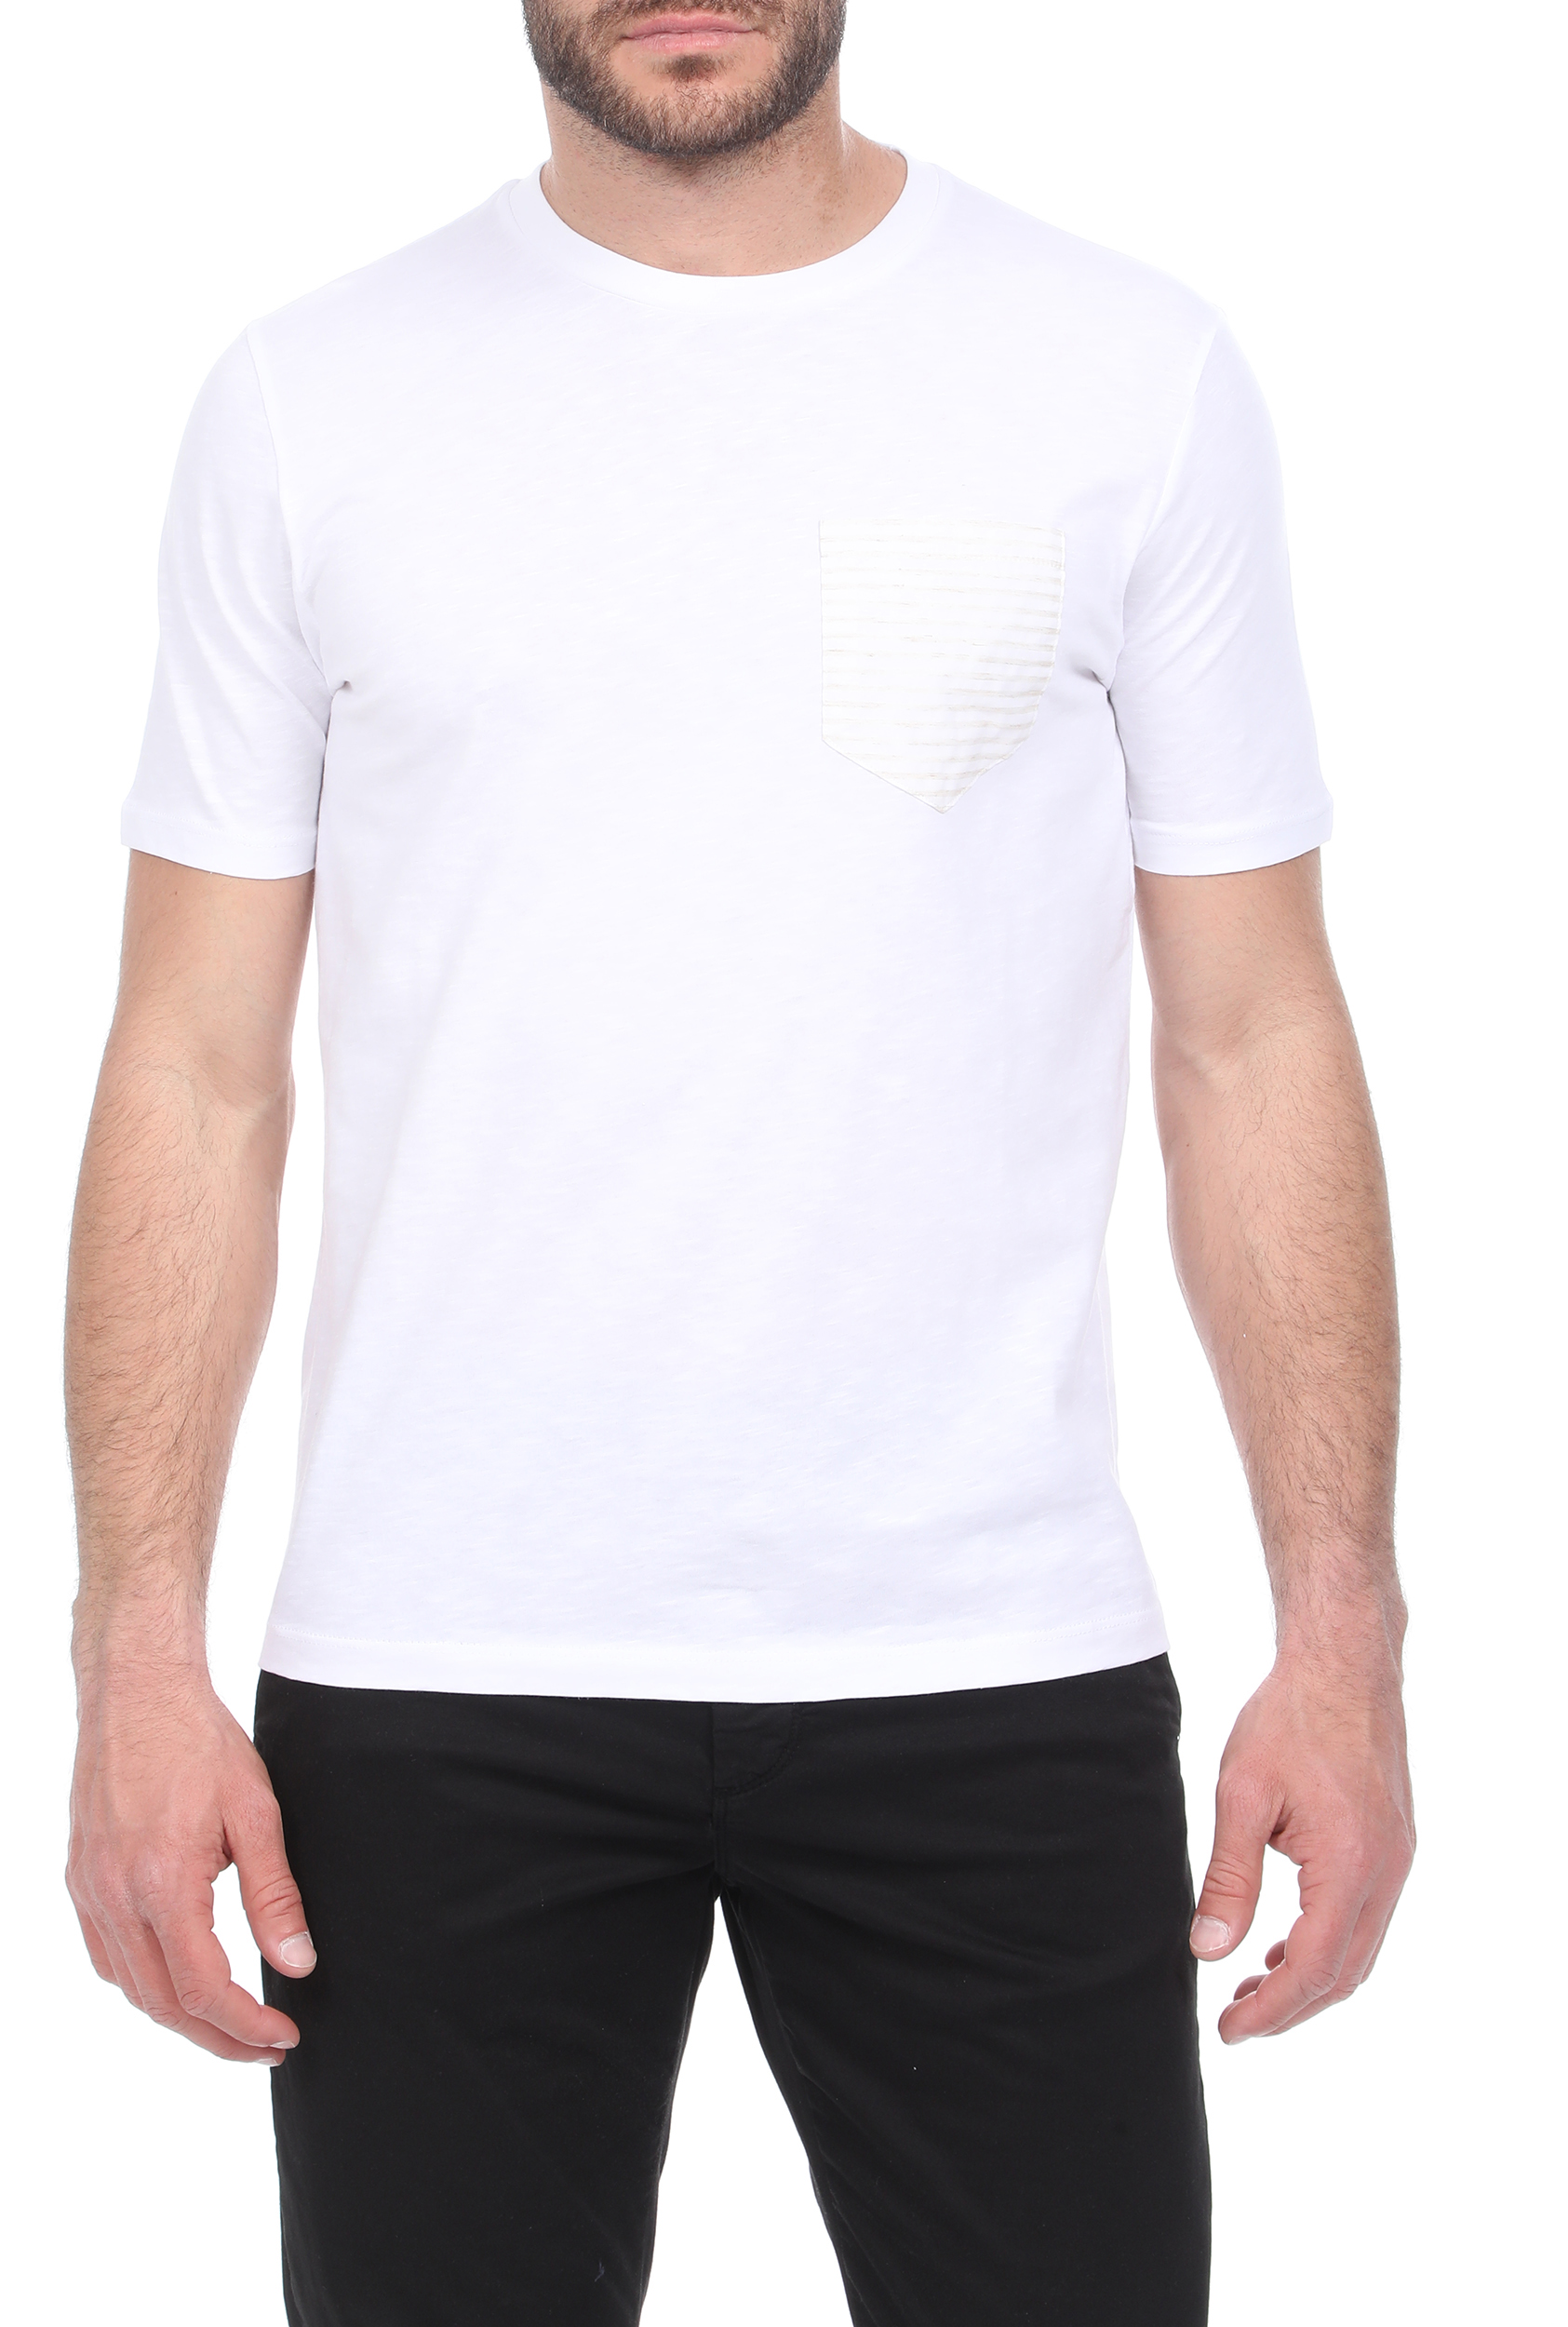 Ανδρικά/Ρούχα/Μπλούζες/Κοντομάνικες SSEINSE - Ανδρικό t-shirt GARCIA JEANS λευκό